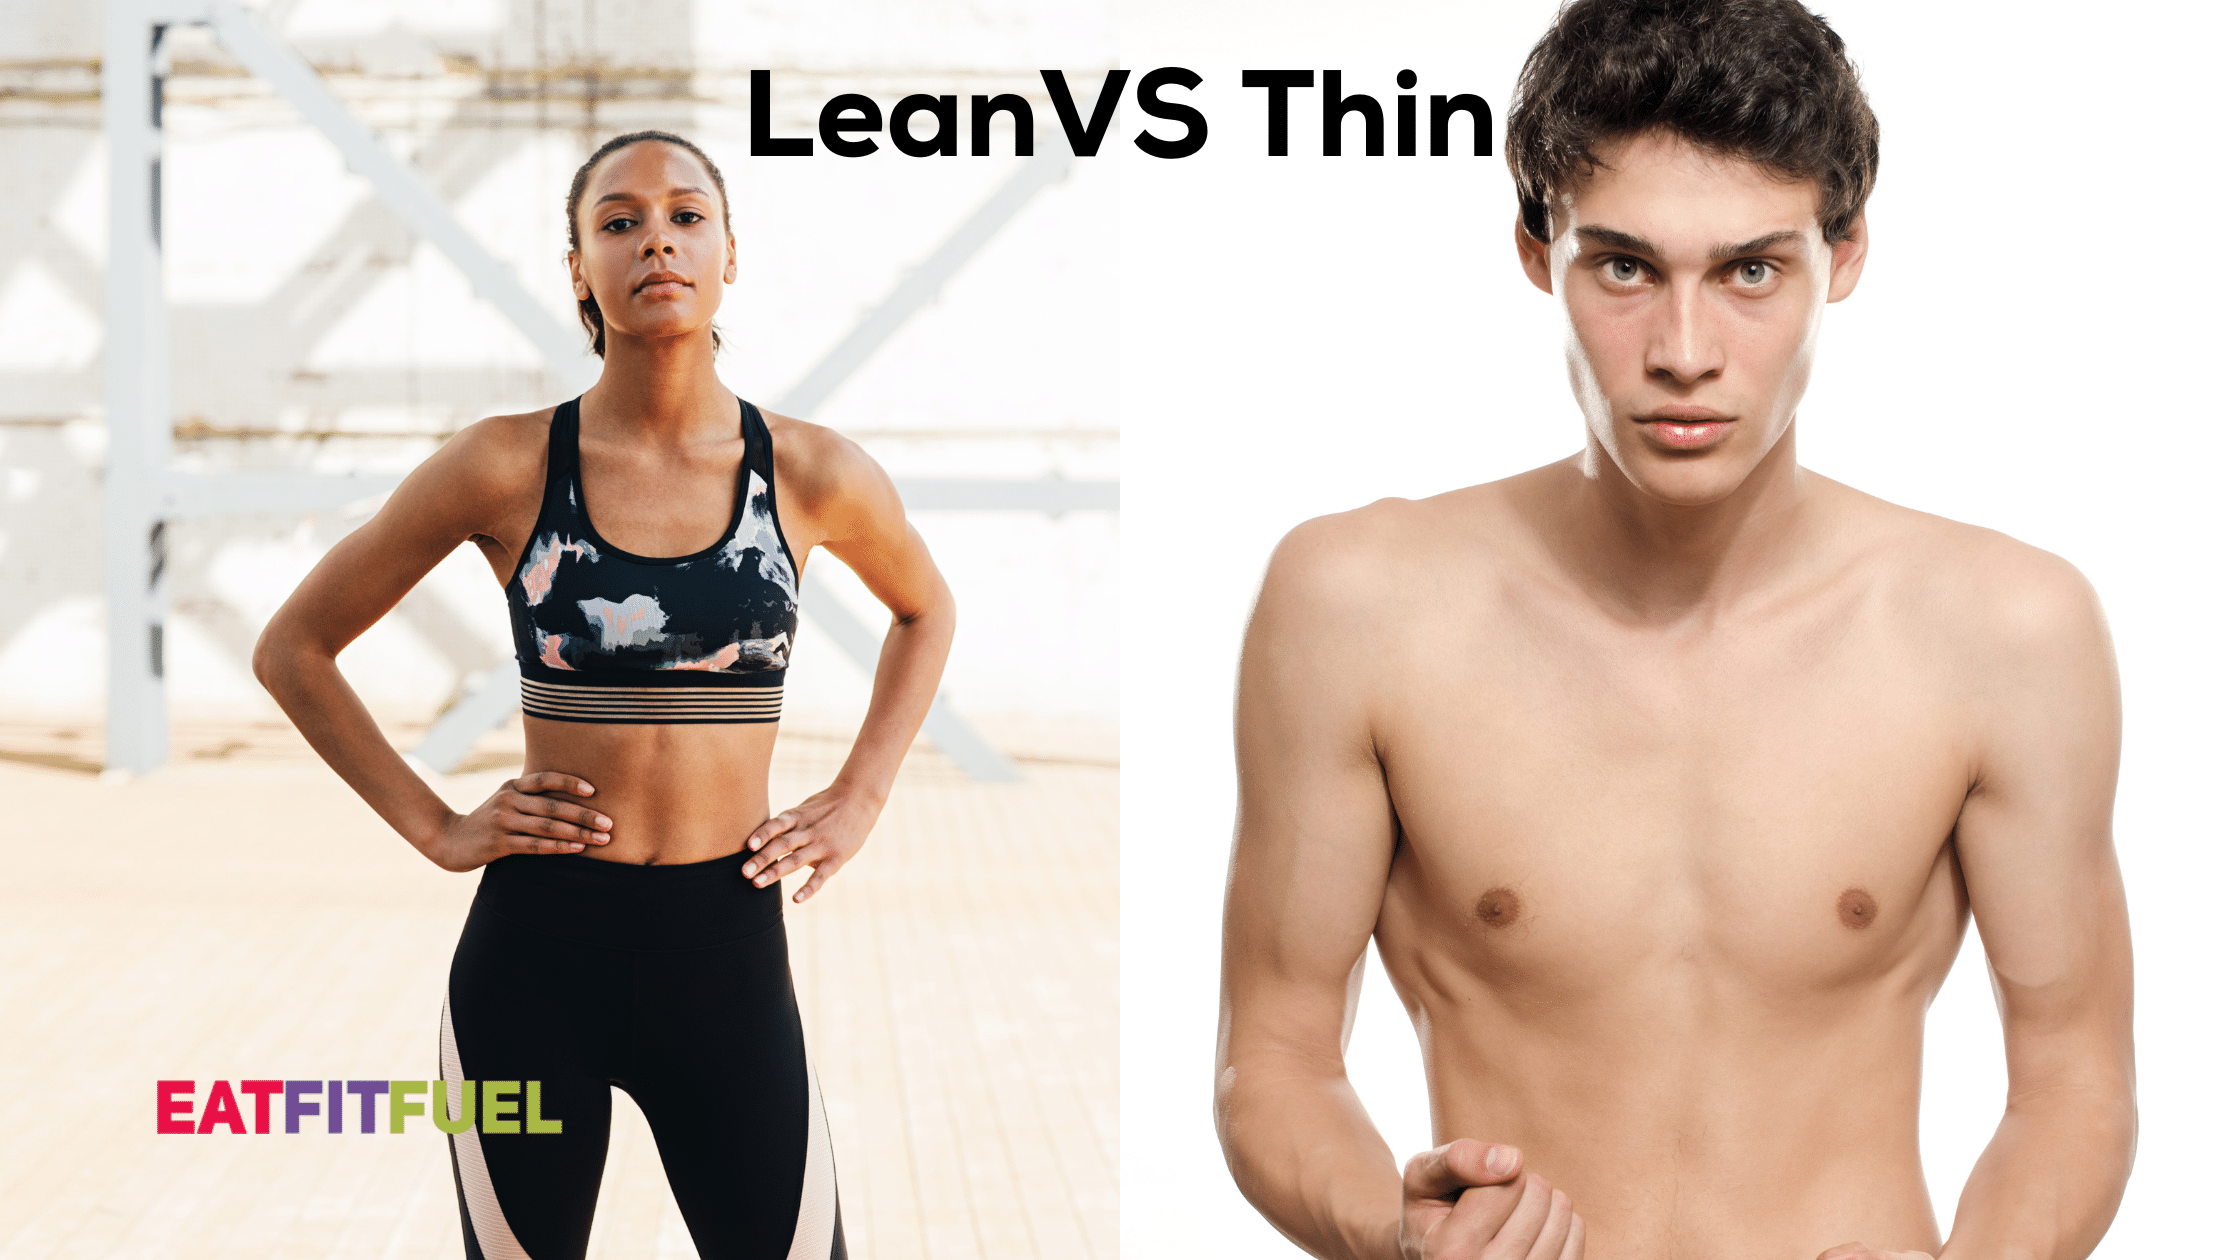 Lean vs thin